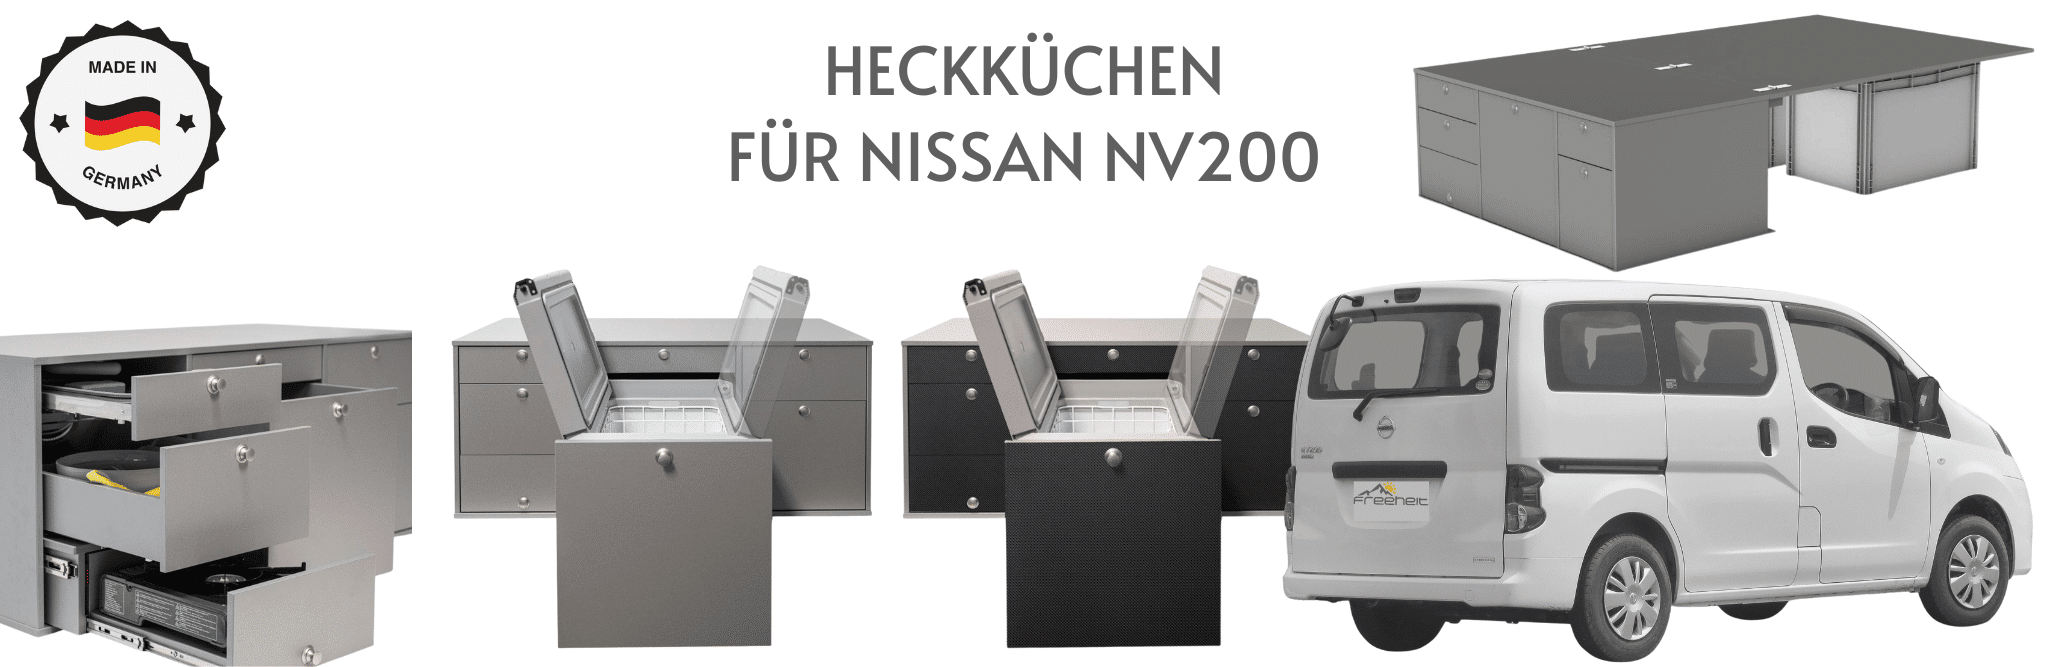 HECKKÜCHE FÜR NISSAN NV200